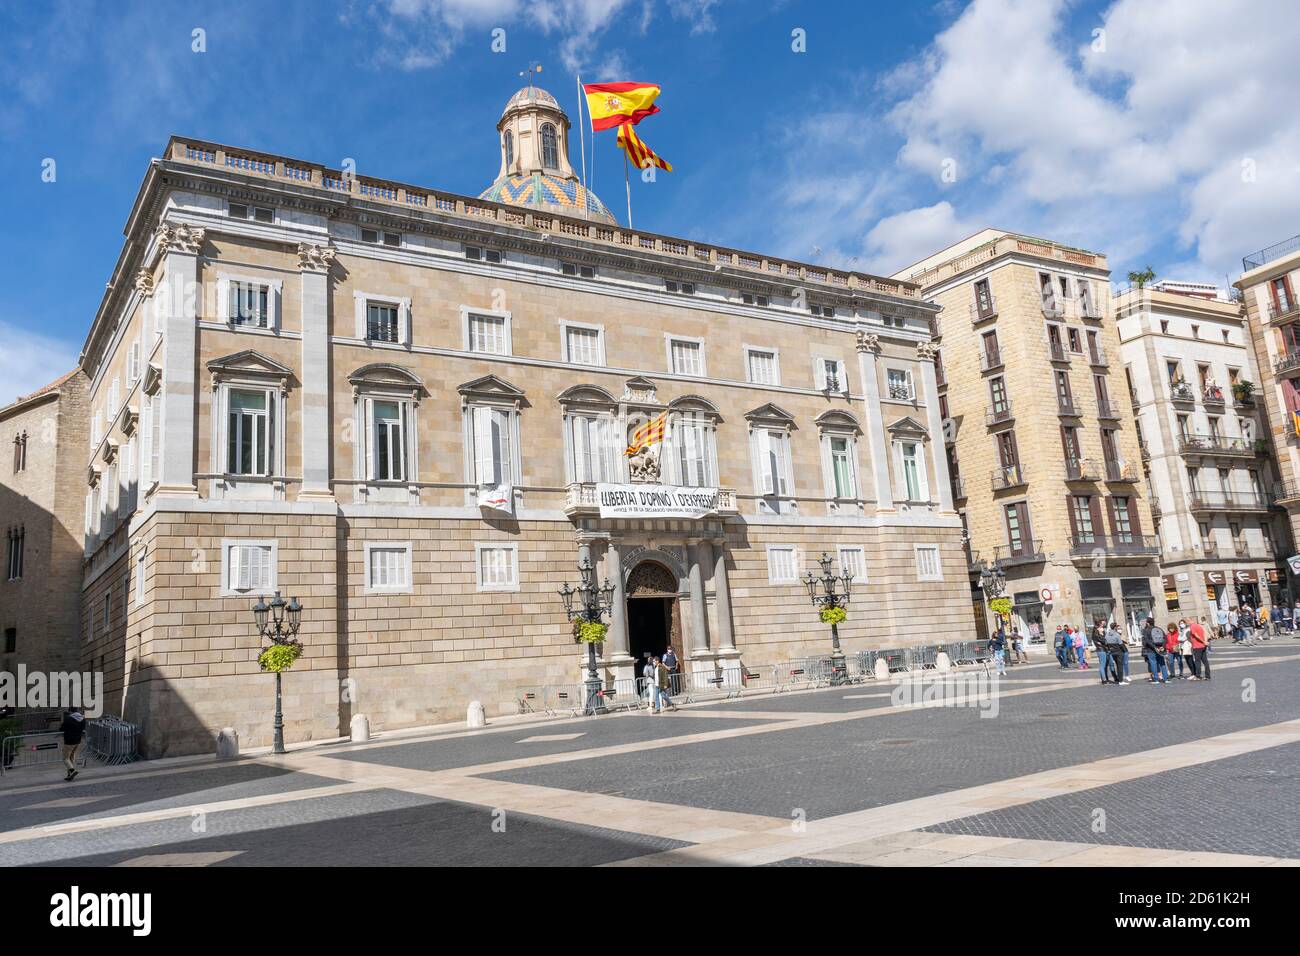 Barcelona, Katalonien, Spanien - 3. Oktober 2020: Blick auf die Generalitat des Katalonienpalastes, Präsidentschaft der Generalitat, auf dem Sant Jaume Platz in Barcelona Stockfoto